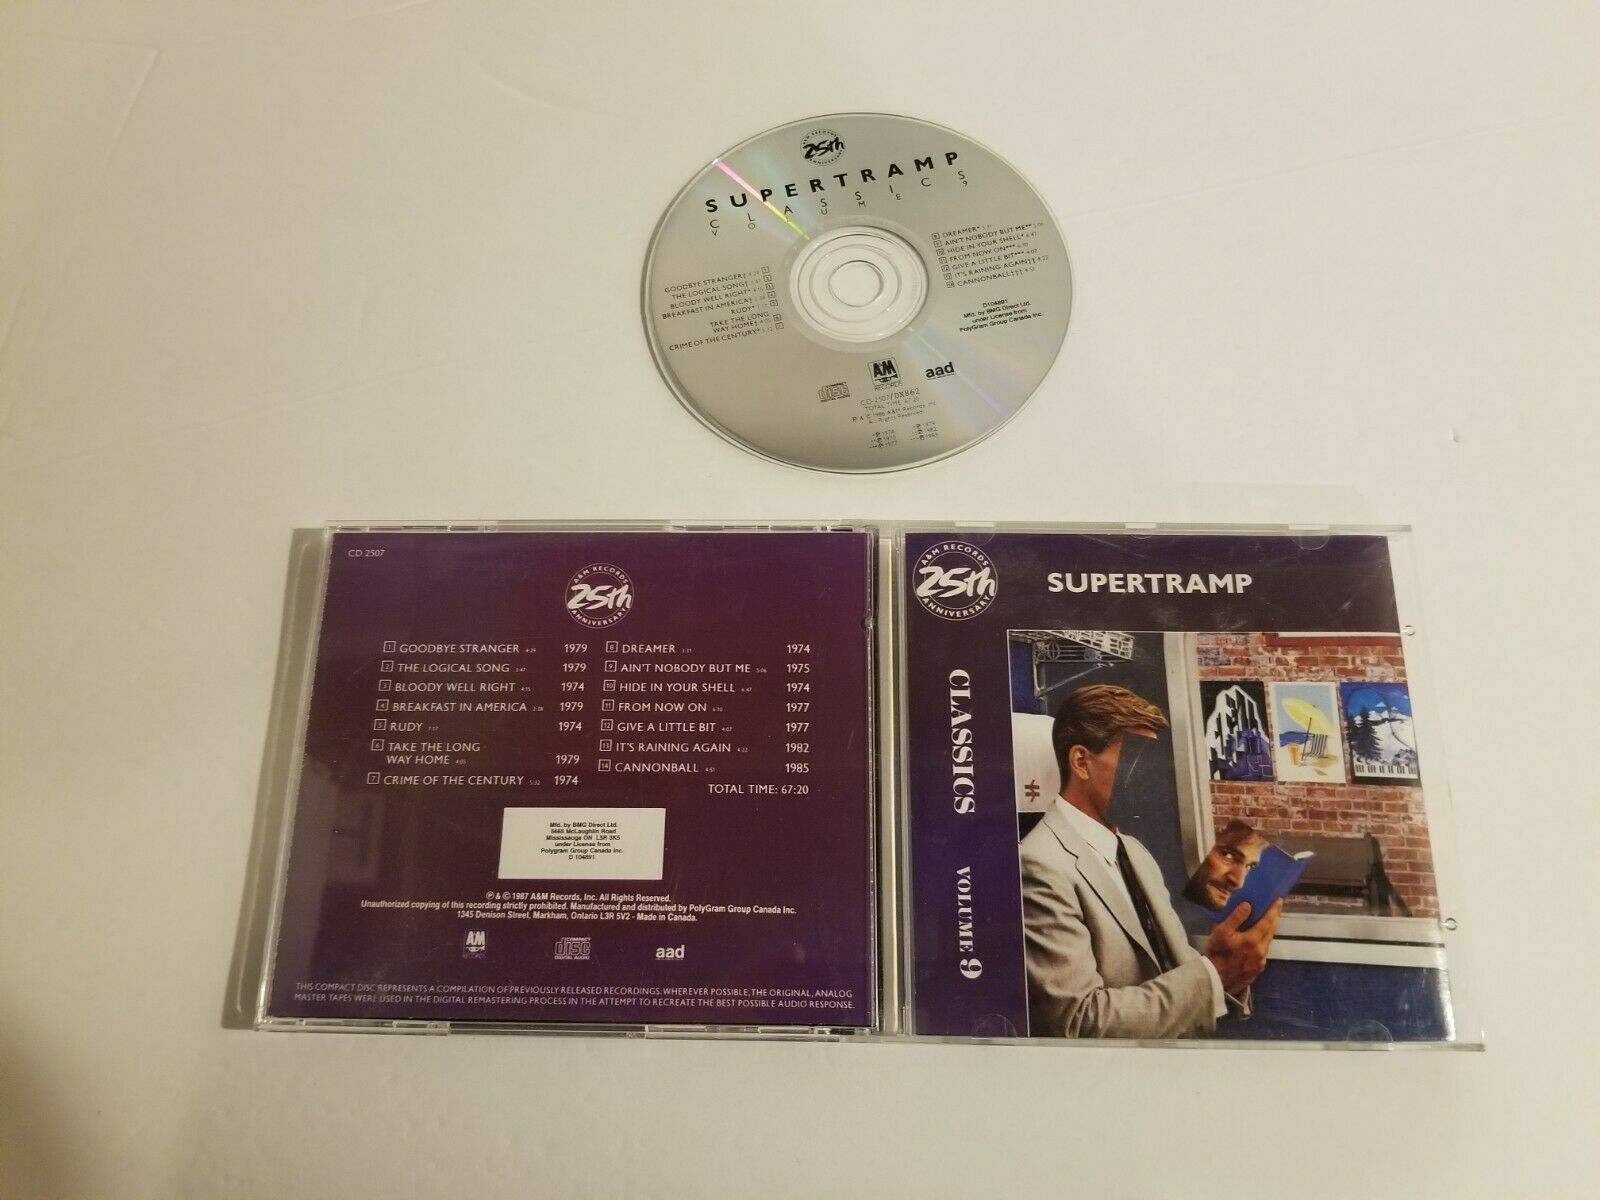 Supertramp Classics Volume 9 (CD, 1987, A&M) - CDs